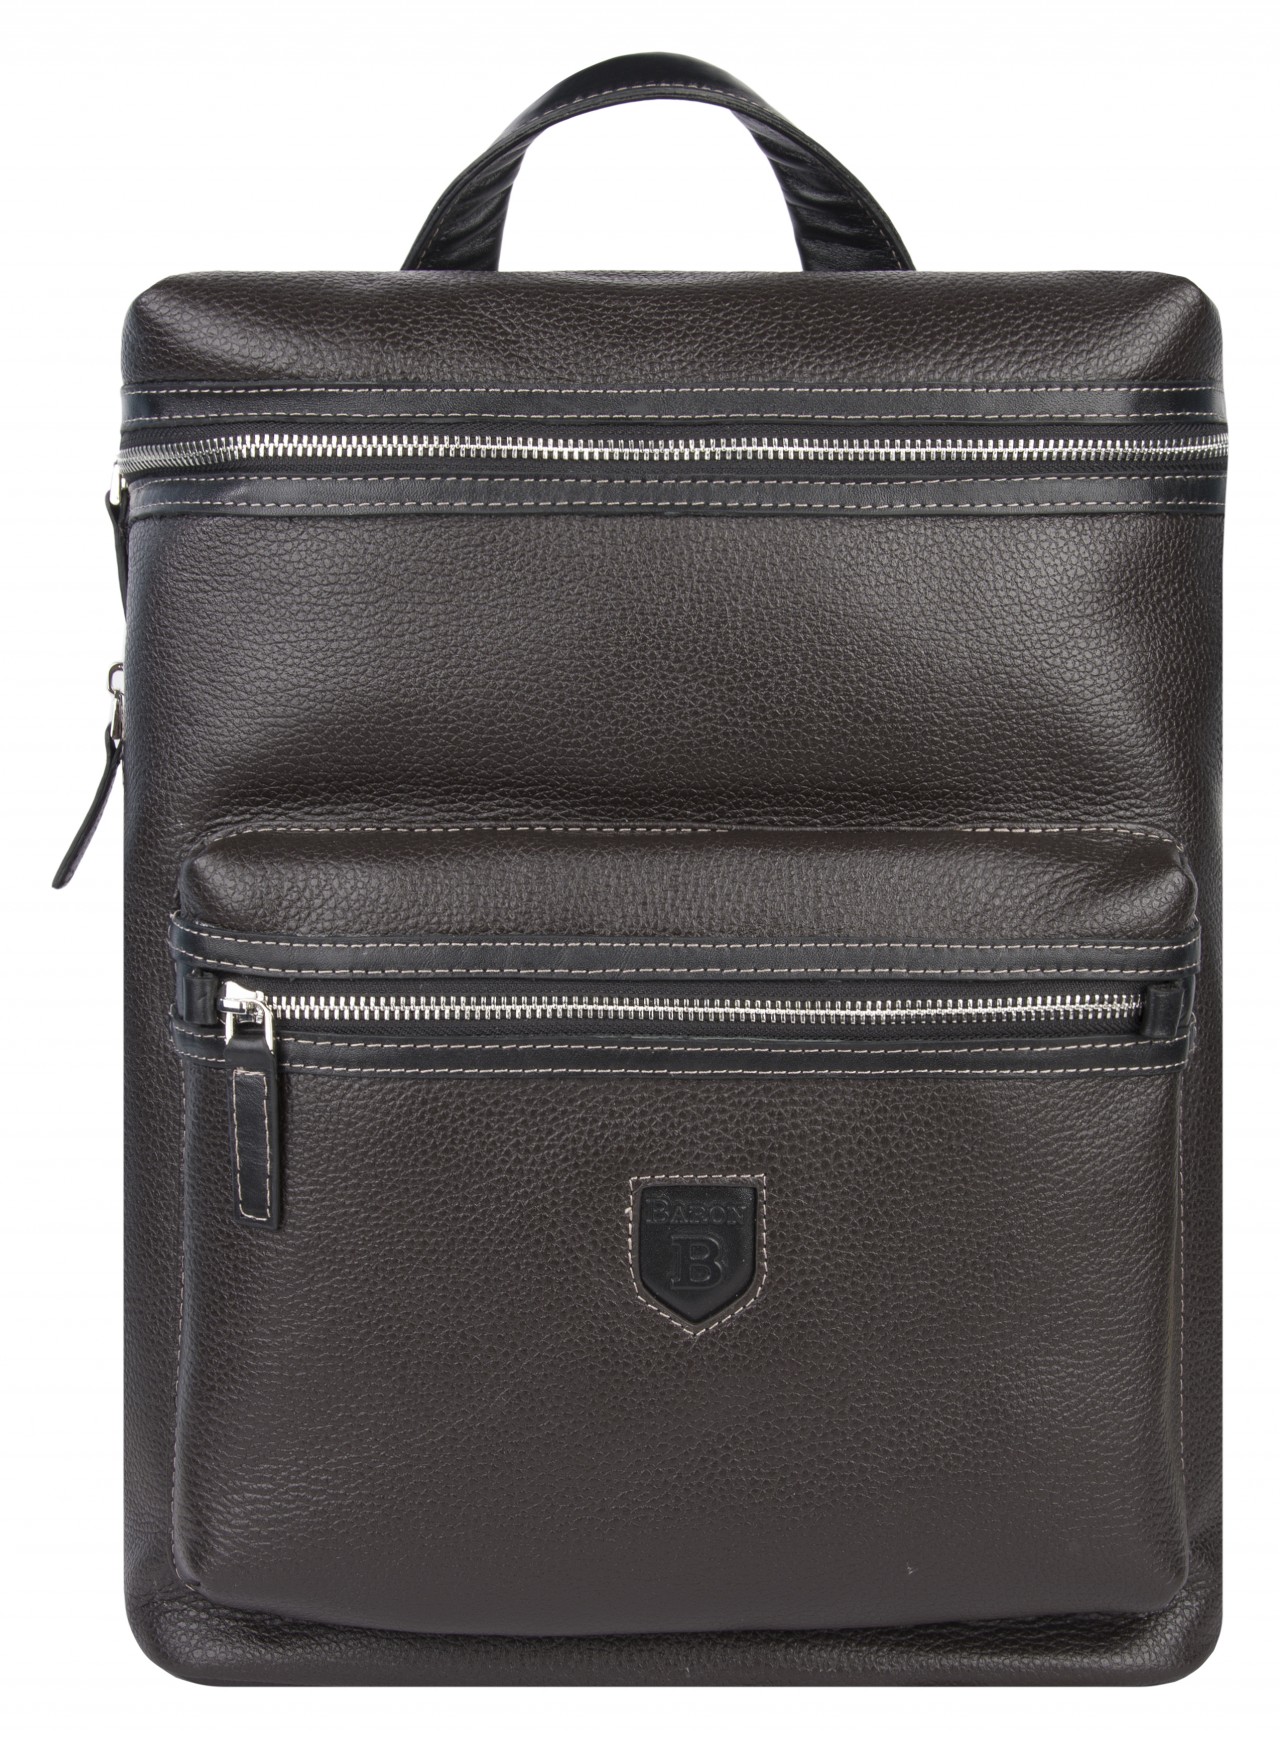 Рюкзак мужской 2-962кВ коричневый/черная отделка, 38x29.5x12 см Baron. Цвет: коричневый; черный